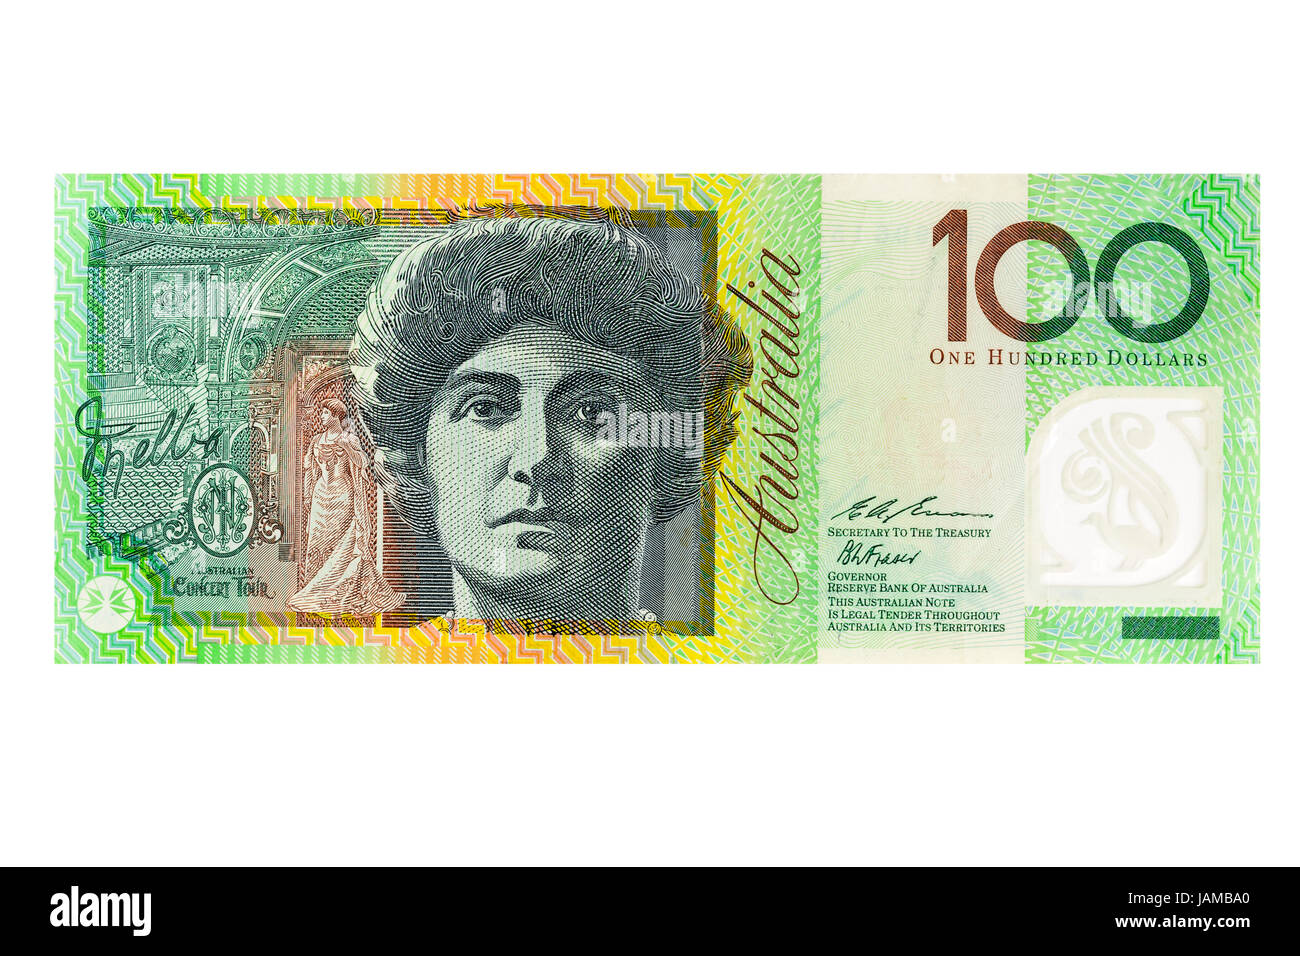 Australian Dollar Note: Tiền giấy đô la Australia với thiết kế độc đáo là mẫu tiền xuất sắc của họ. Với những hình ảnh liên quan, bạn sẽ có cơ hội khám phá những đặc điểm và bí mật của tiền đô la này. Đây cũng là cách thú vị để tìm hiểu về văn hóa và lịch sử của quốc gia Australia.